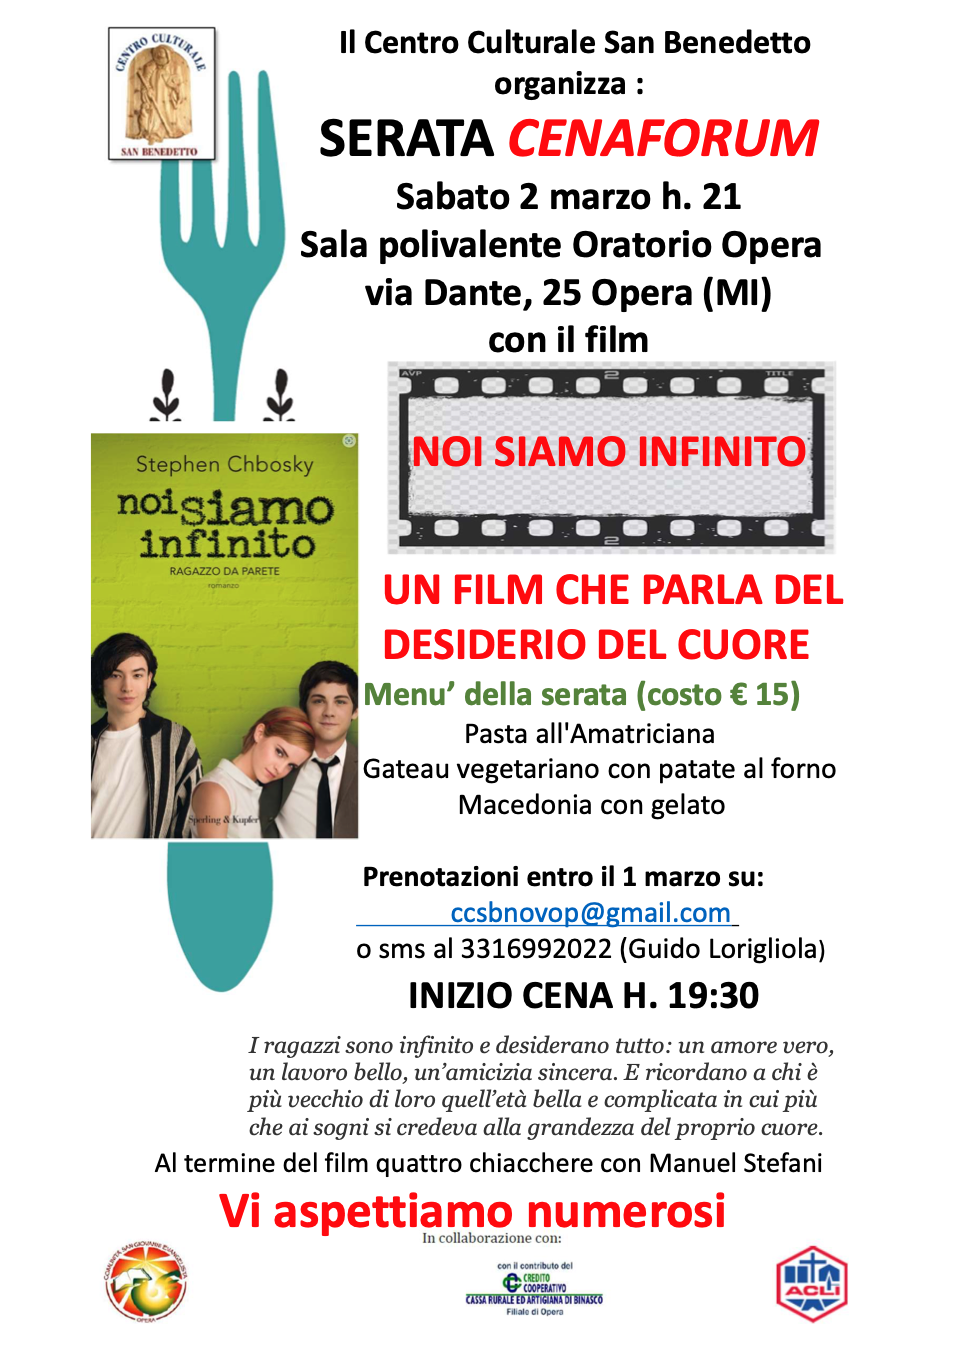 Featured image for “Opera (Mi): Noi siamo infinito. Un film che parla del desiderio del cuore”